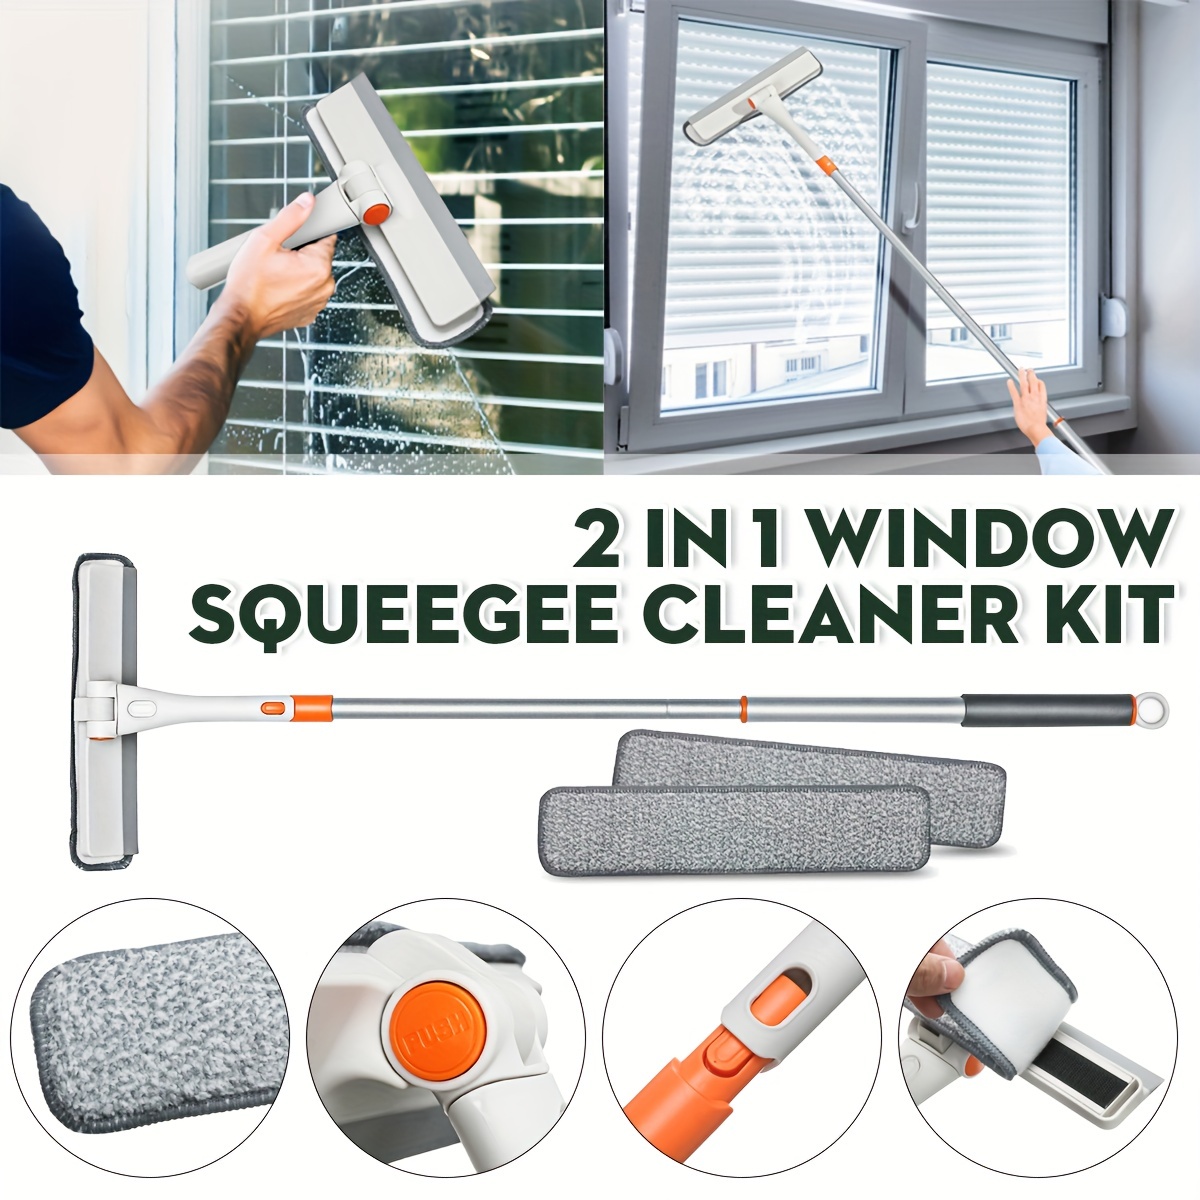 Kit de limpiacristales de ventana, plumeros altos para limpieza y limpieza  de ventanas con poste telescópico, limpiador de ventanas y